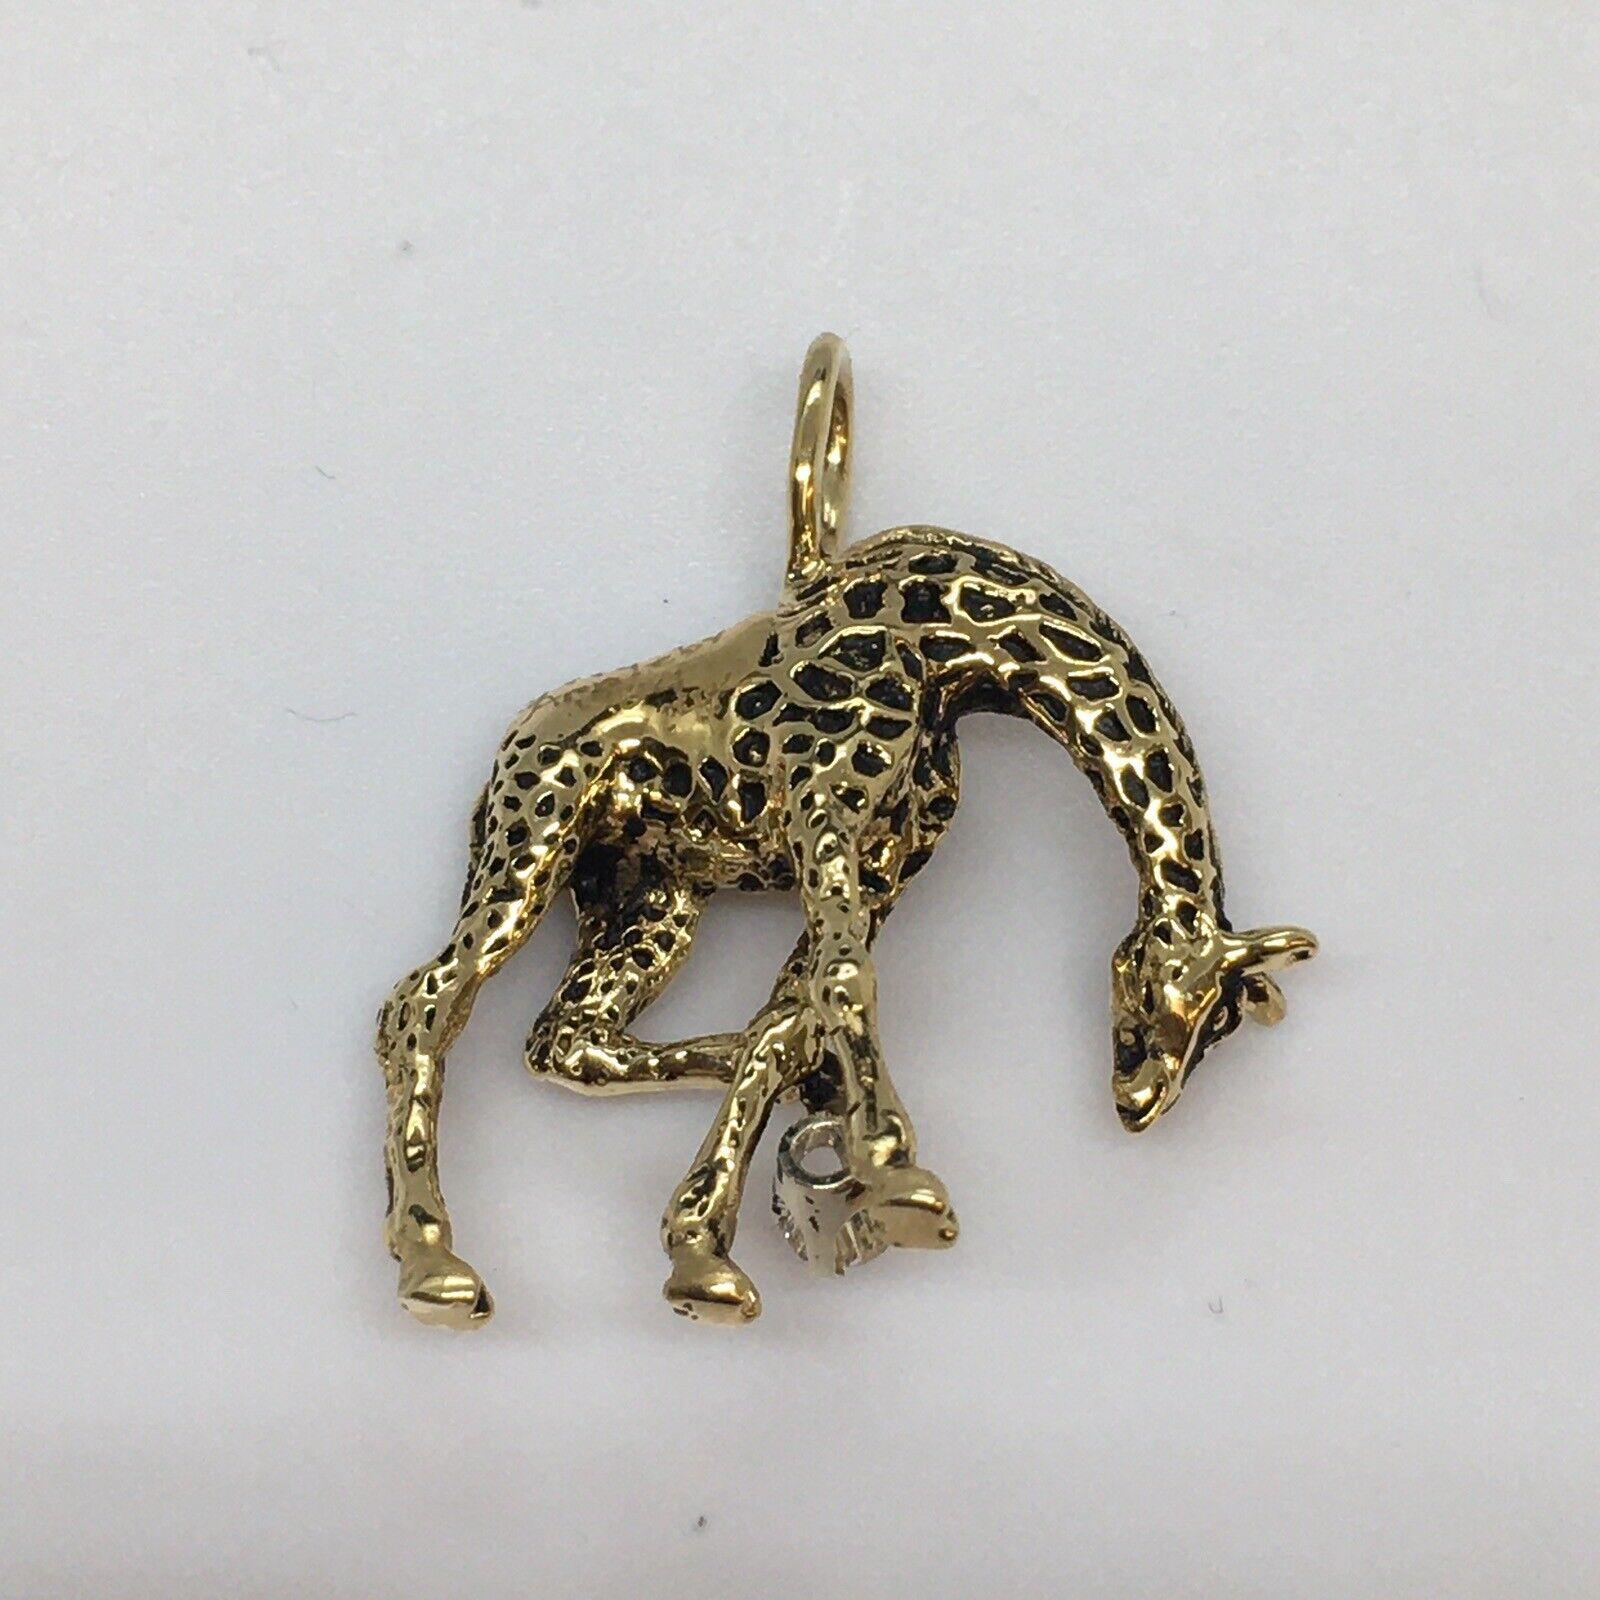 G & G Appleby Collier girafe en or jaune 14 carats avec diamants et émail

Gregory A. Appleby né à Van Nuys, Ca. Il s'est associé à Gayle Bright et a commencé à sculpter des bijoux en métal précieux. Leurs œuvres ont été exposées dans de nombreuses